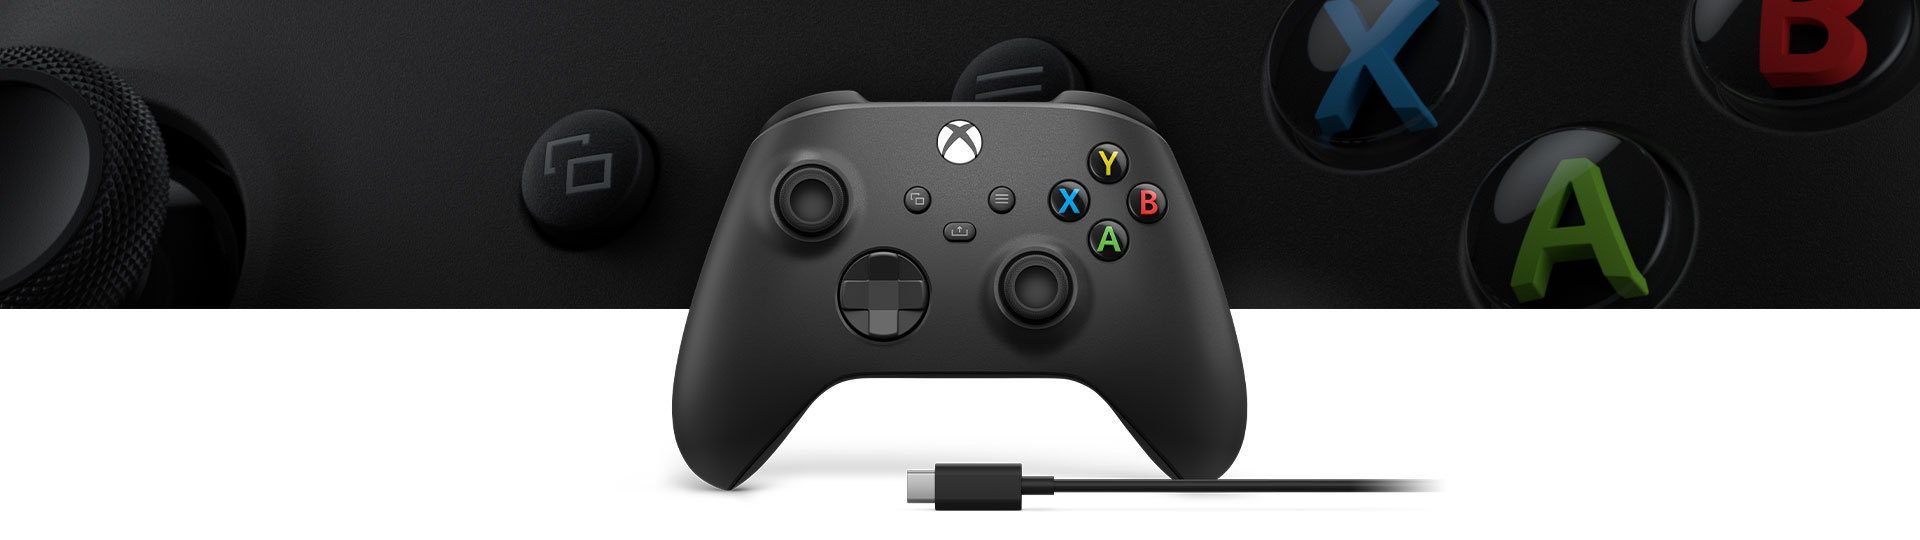 Ασύρματο χειριστήριο Xbox + Καλώδιο USB-C® με κοντινή όψη της υφής της επιφάνειας του χειριστηρίου